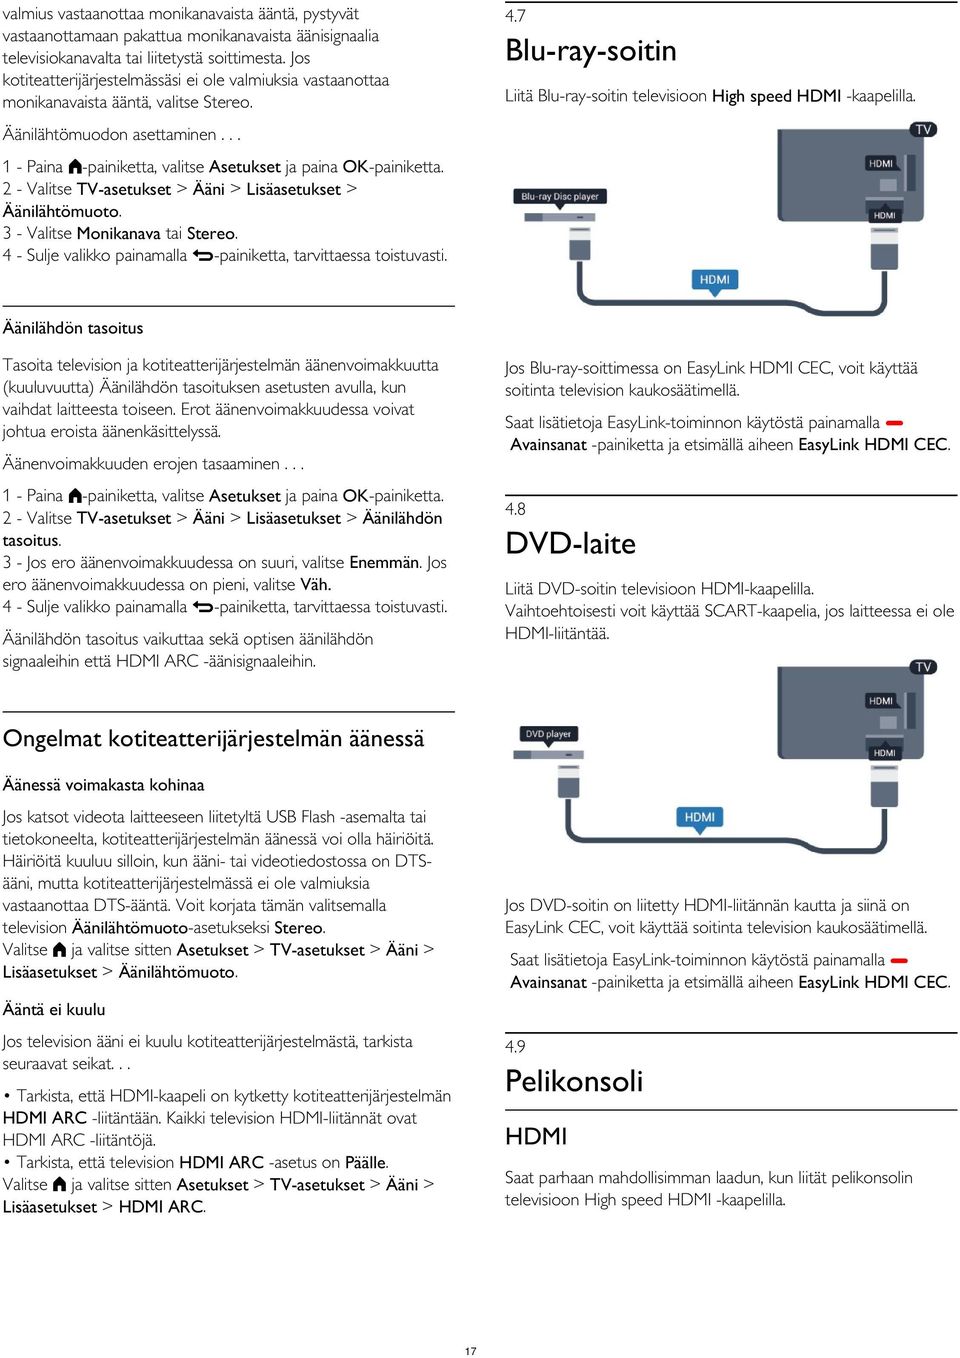 Äänilähtömuodon asettaminen... 2 - Valitse TV-asetukset > Ääni > Lisäasetukset > Äänilähtömuoto. 3 - Valitse Monikanava tai Stereo.